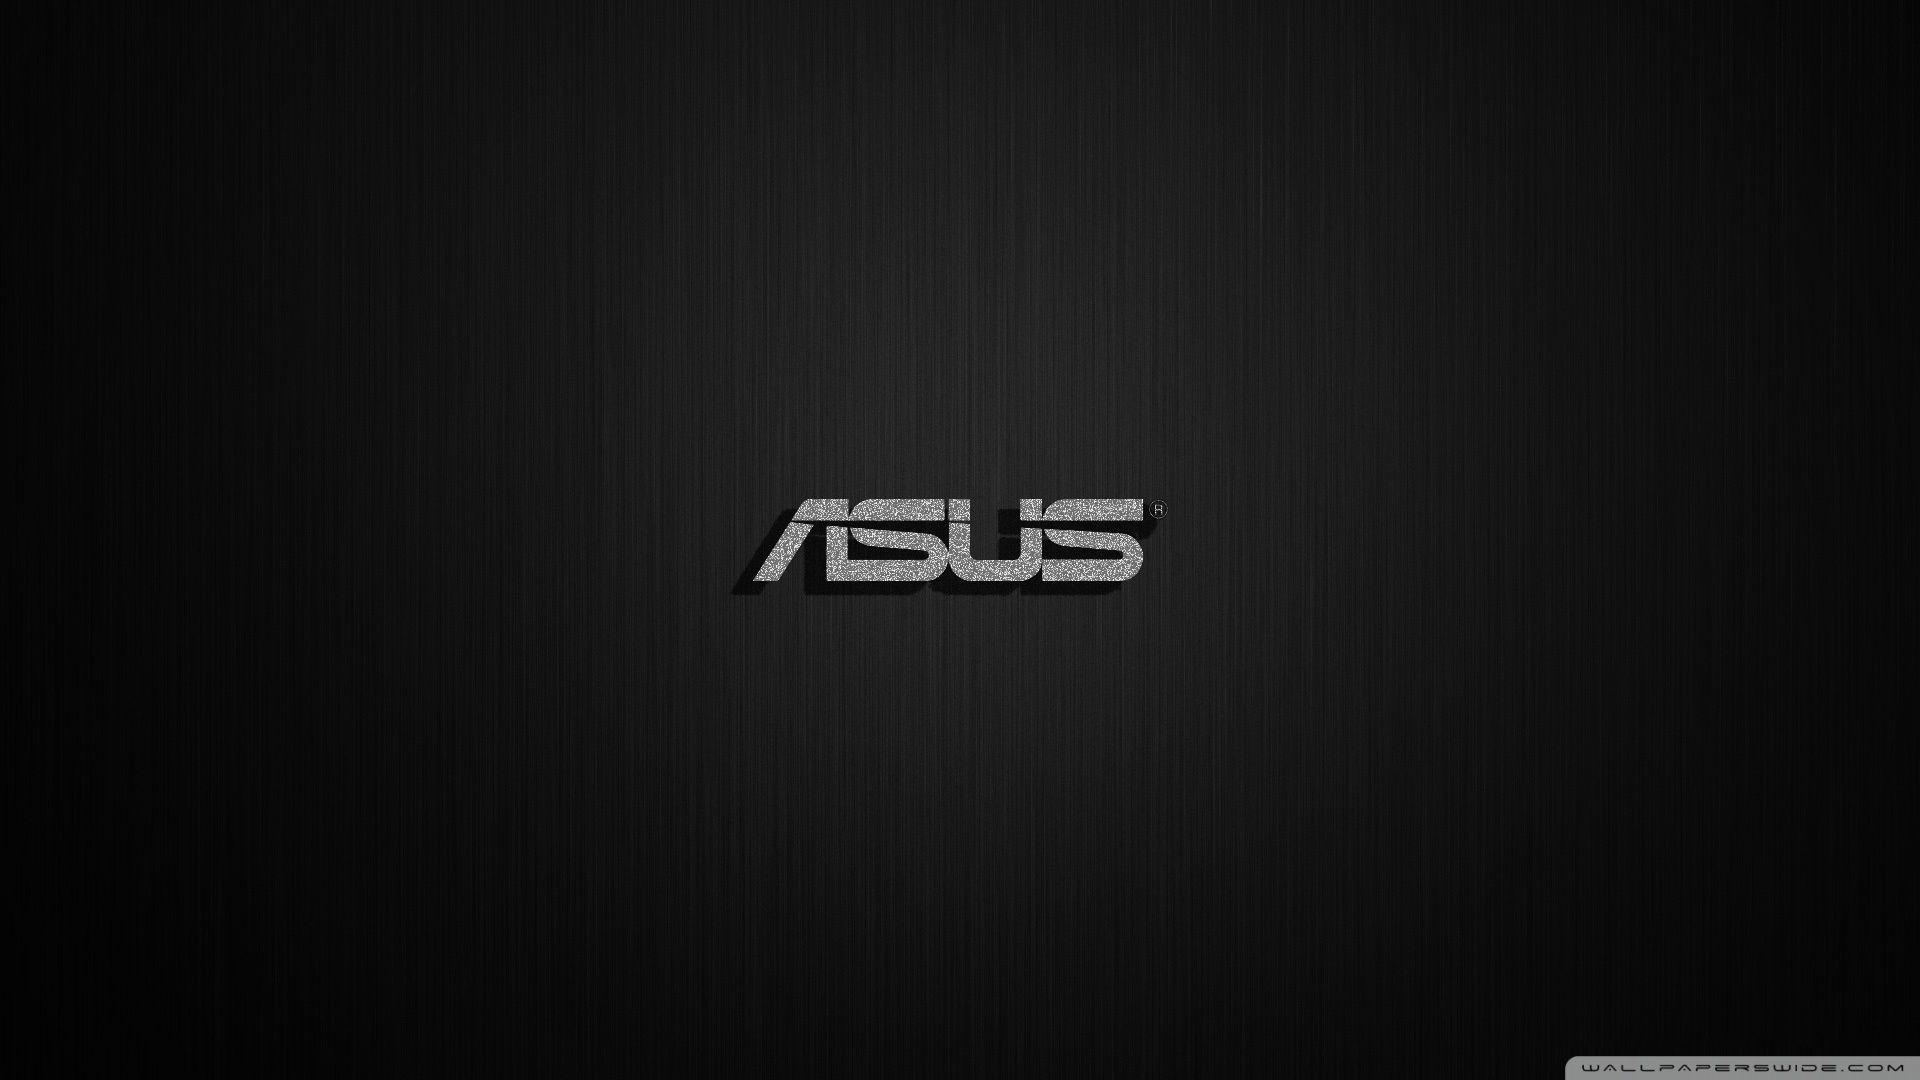 ASUS nf Ultra HD Desktop Background Wallpaper for 4K UHD TV